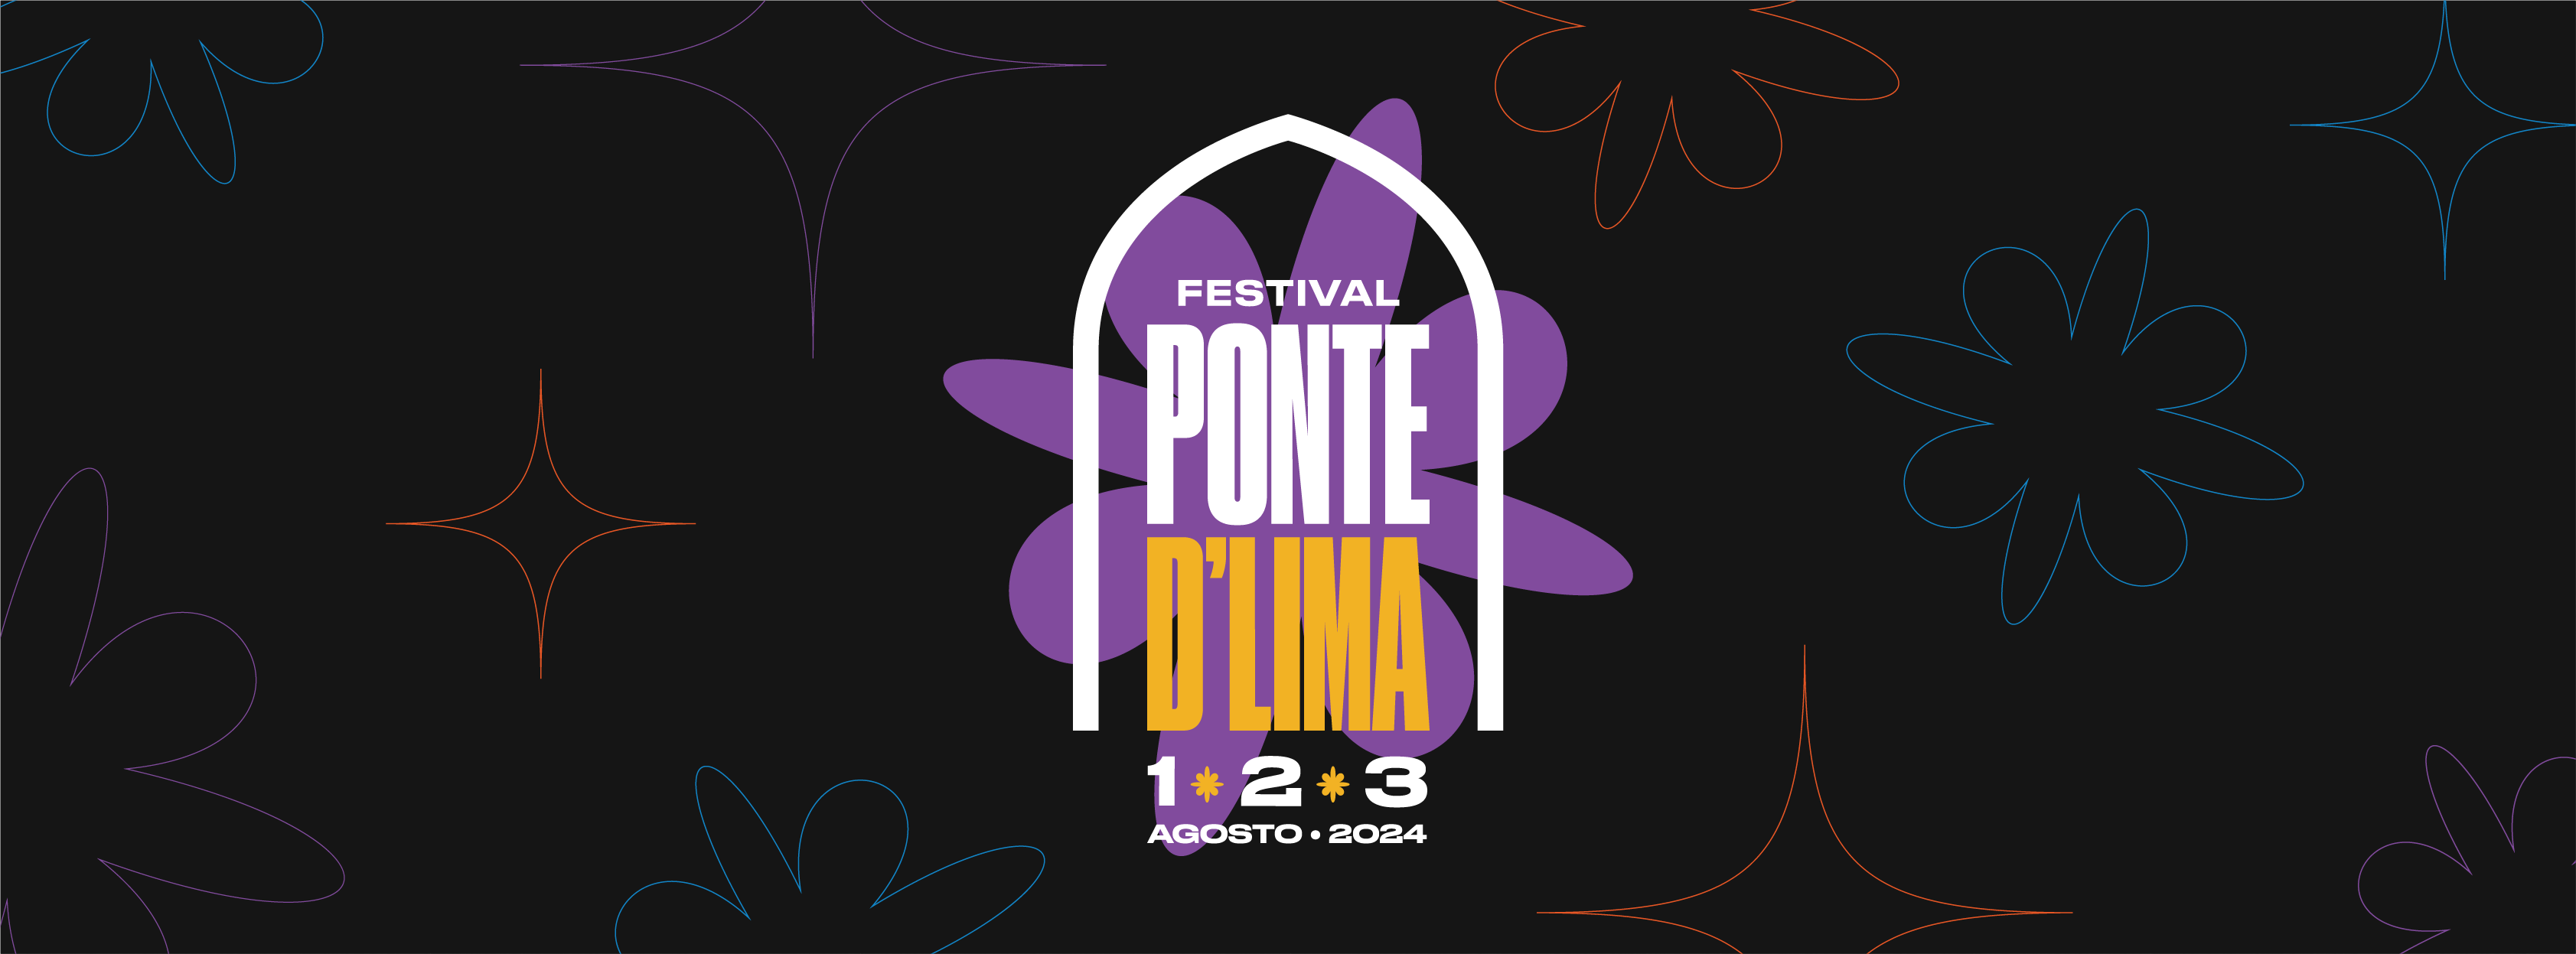 !!! (CHK CHK CHK), KOKOKO, Mão Morta, Pongo, Glockenwise, Conjunto Corona e Ana Lua Caiano confirmados no Festival Ponte D’Lima